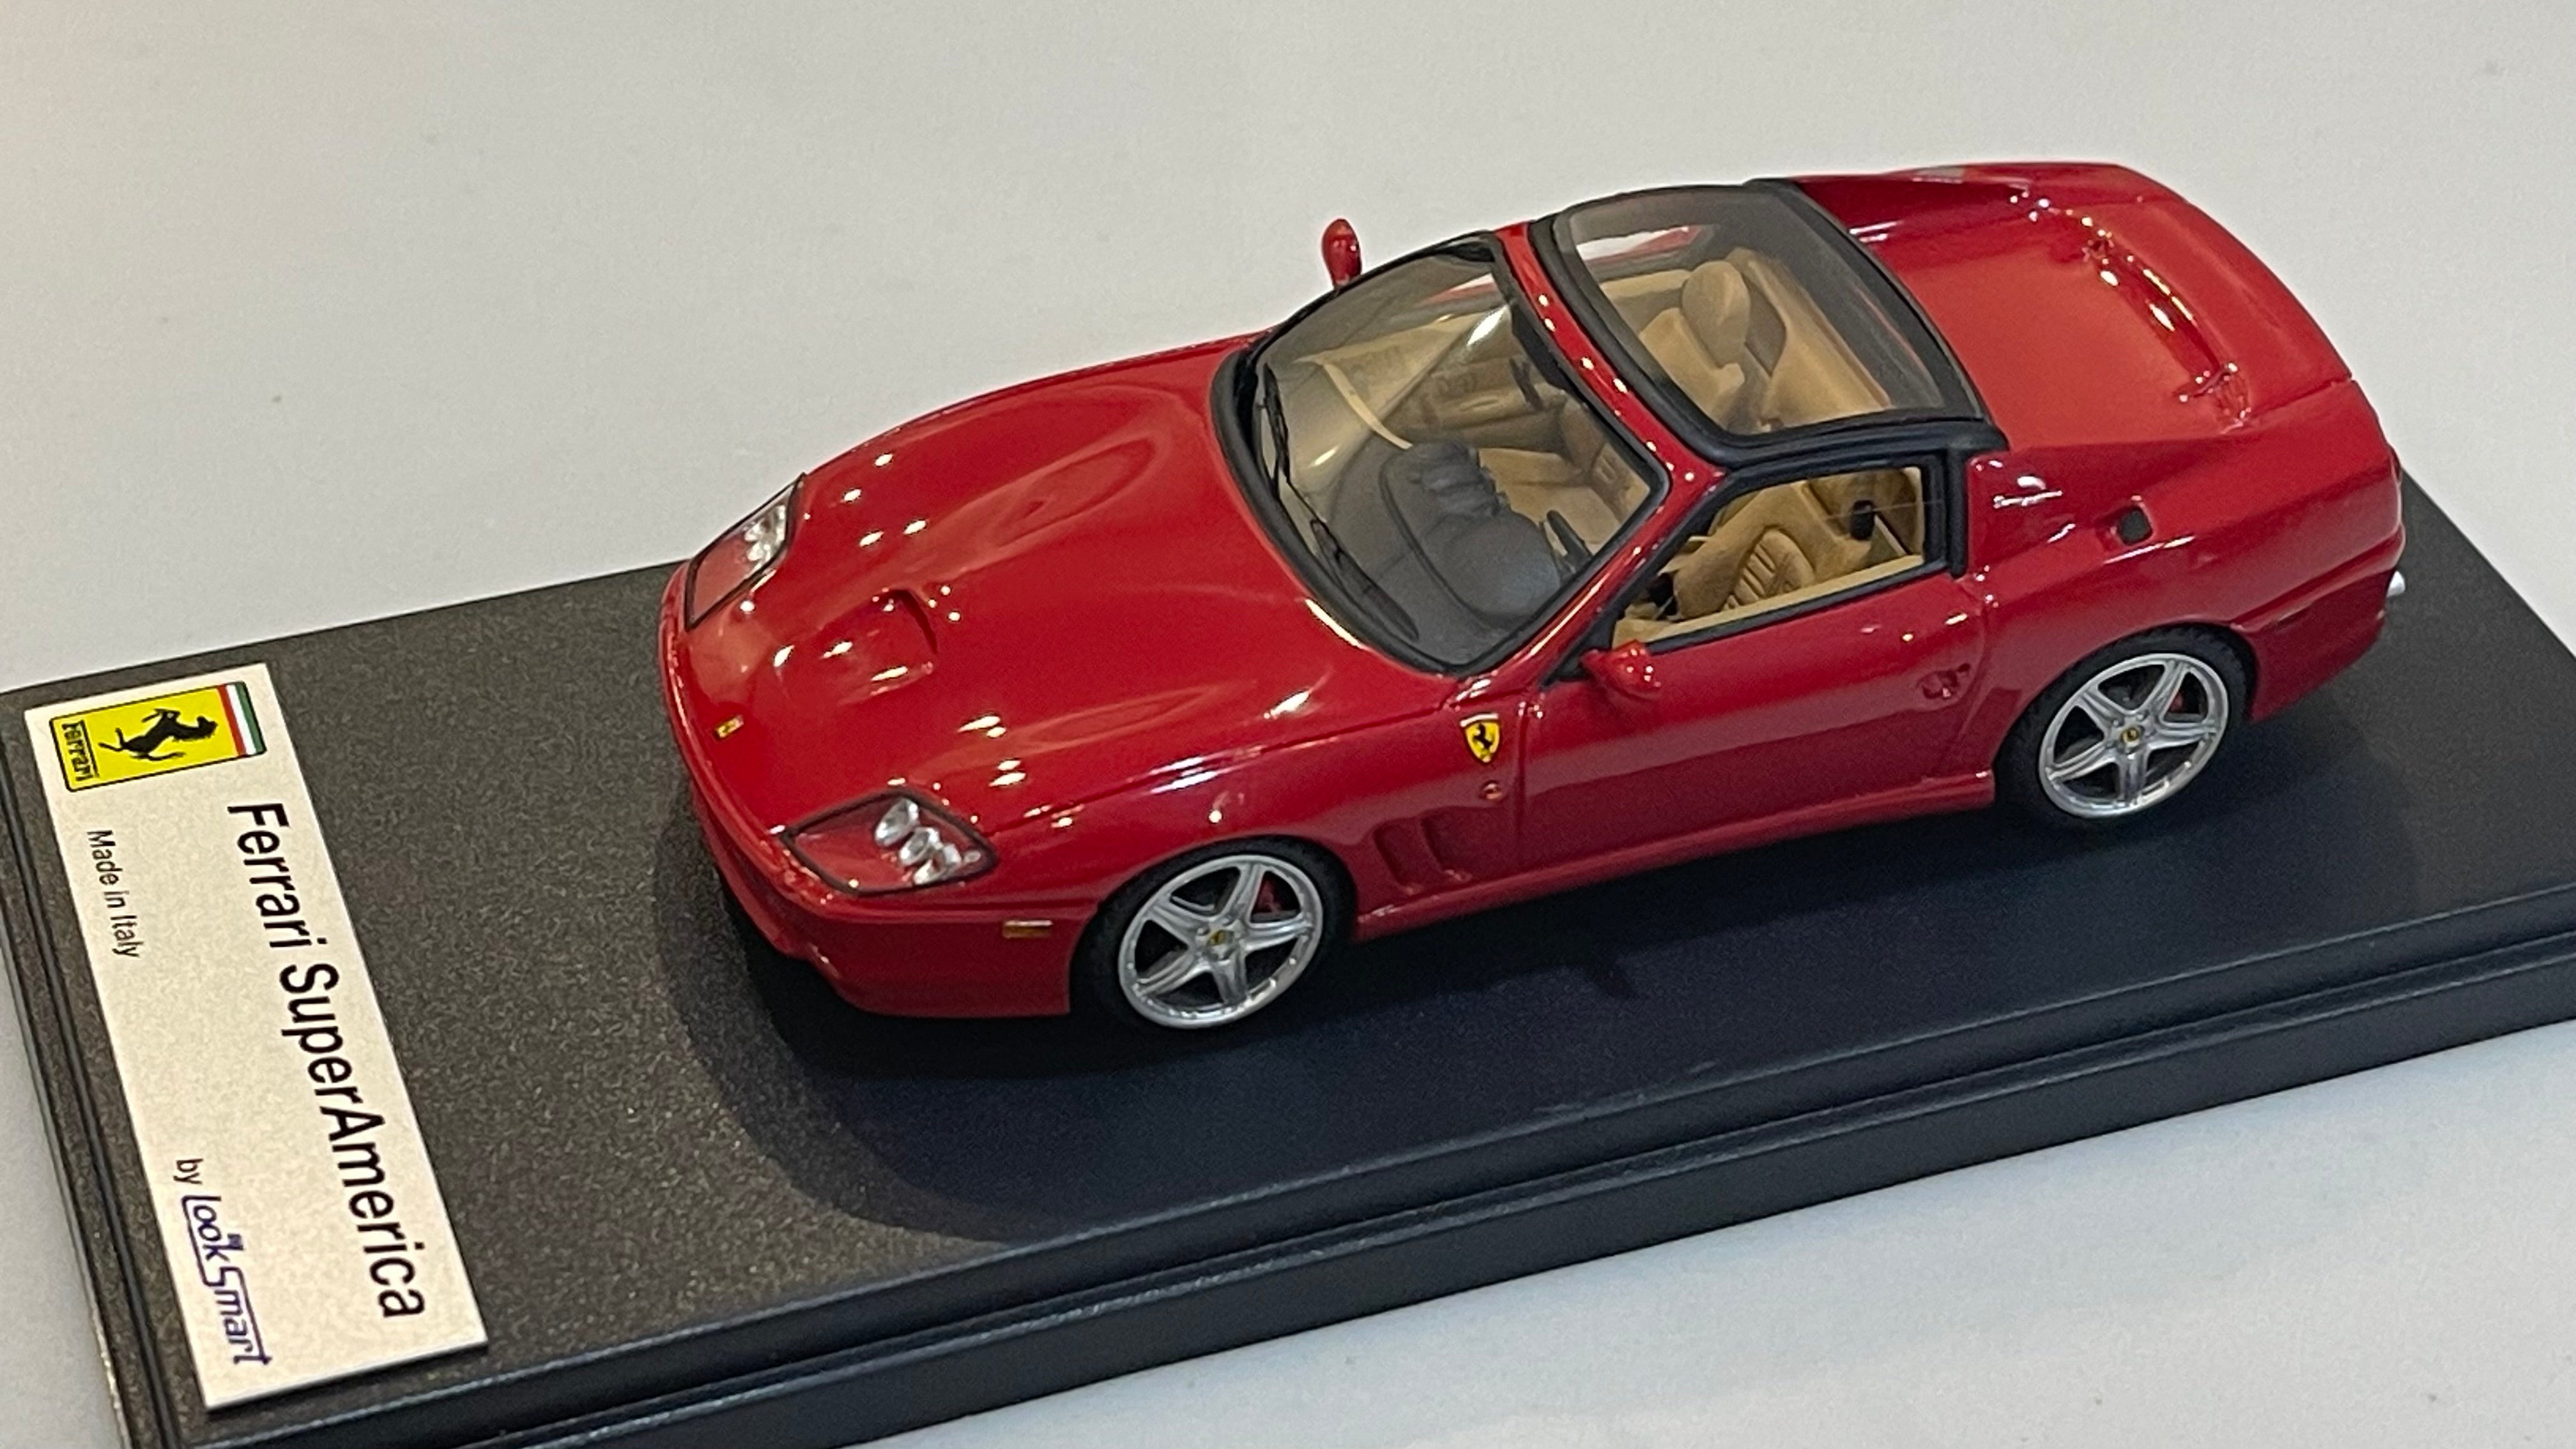 Looksmart 1/43 Ferrari 575 Superamerica 2004 Red LS126A